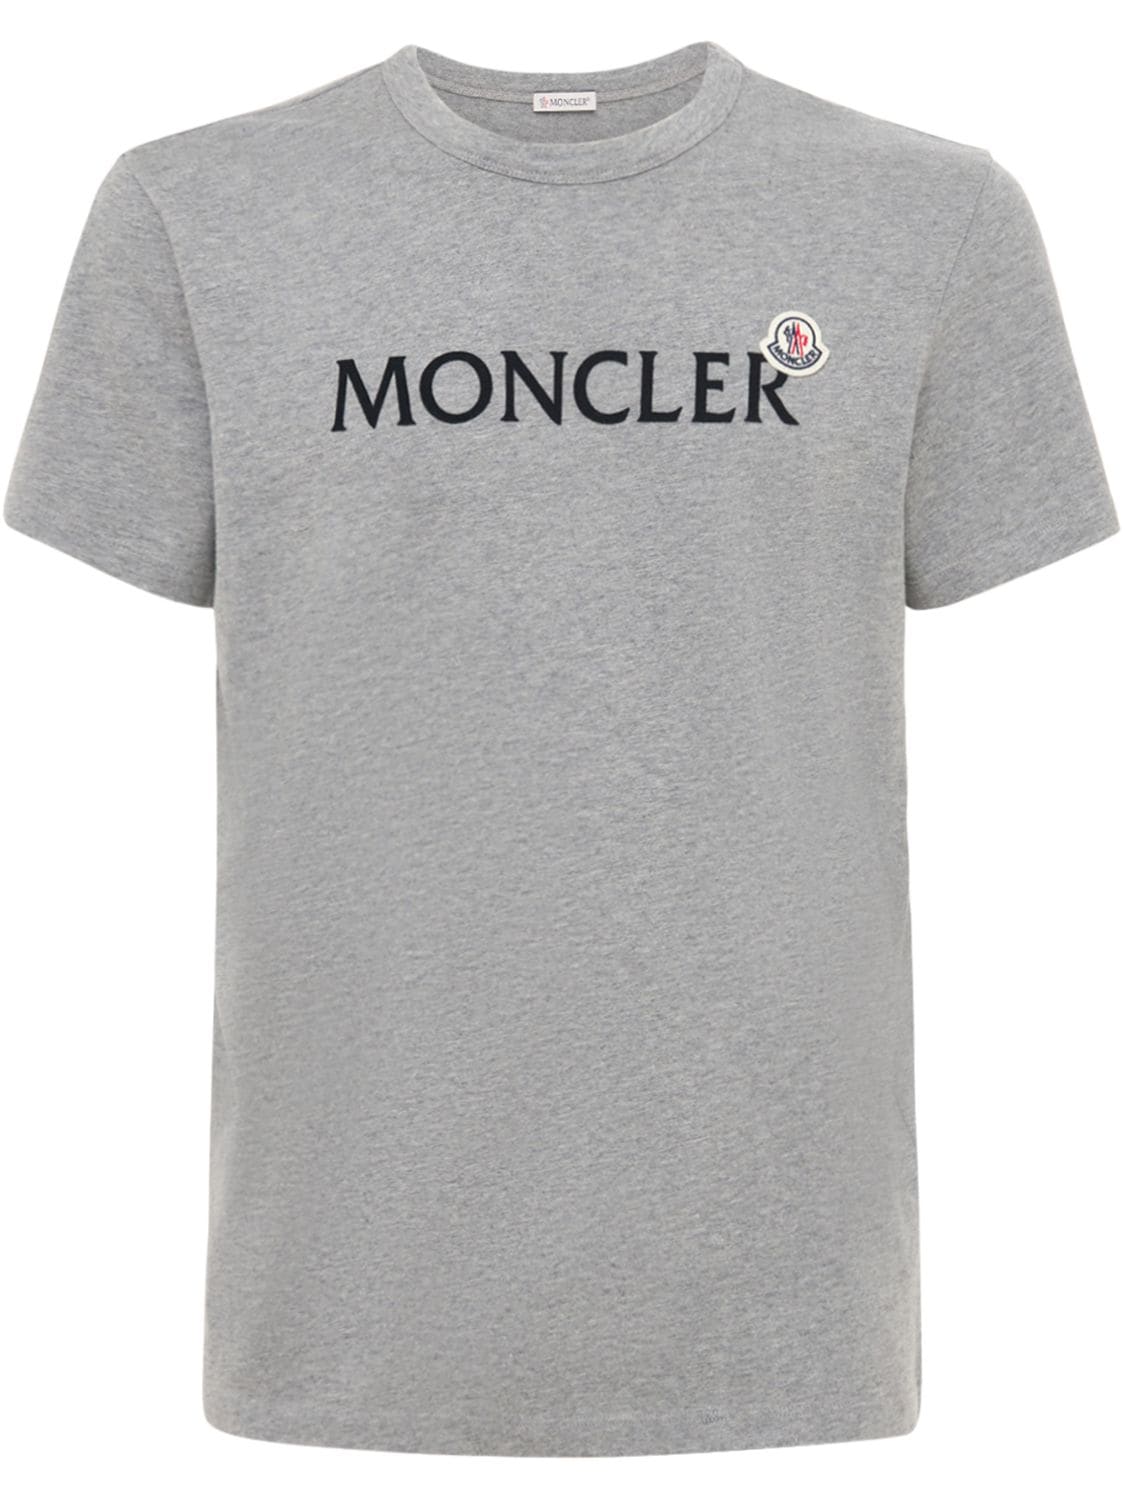 MONCLER 棉质平纹针织T恤,74I3EU068-OTG50